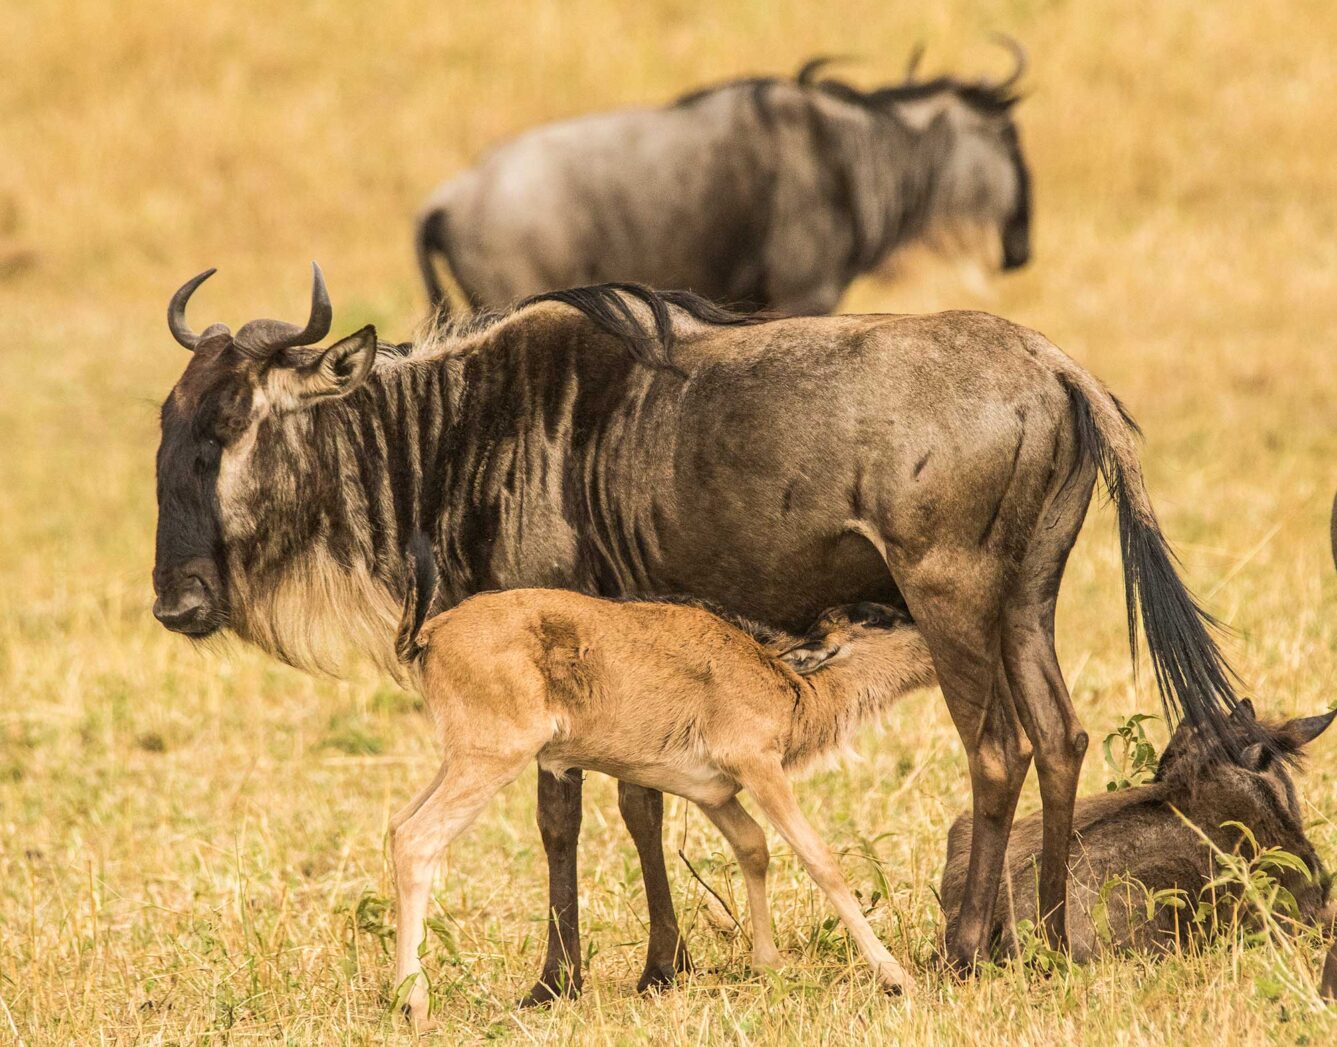 A mother wildebeest feeds her calf